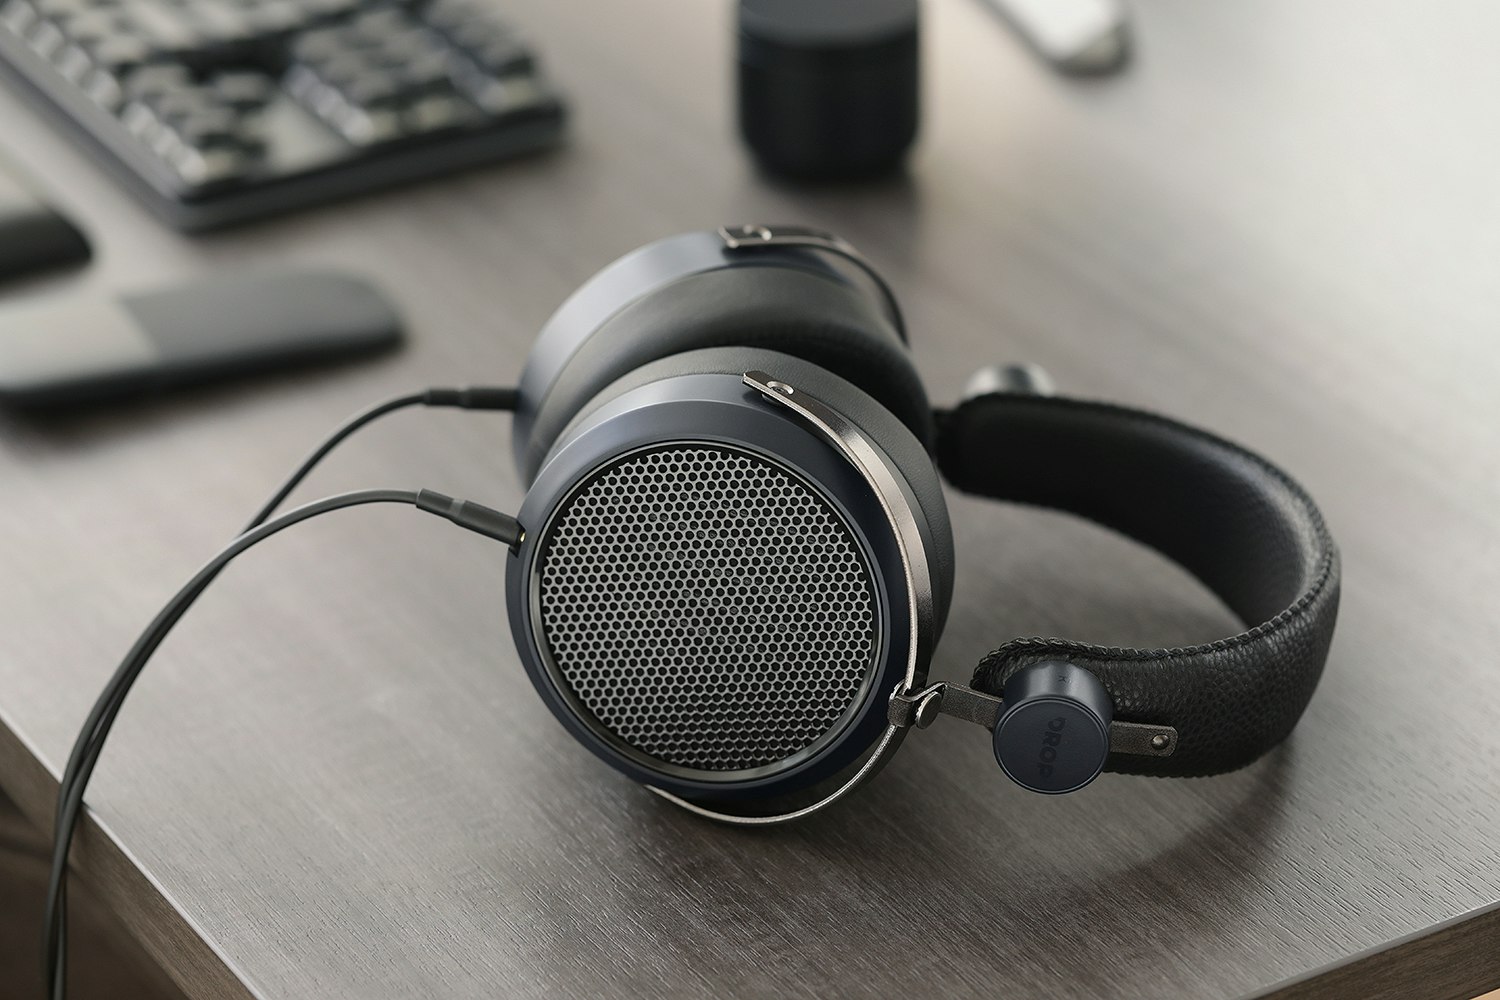 Drop + HIFIMAN HE-X4 Planar Magnetic Headphones